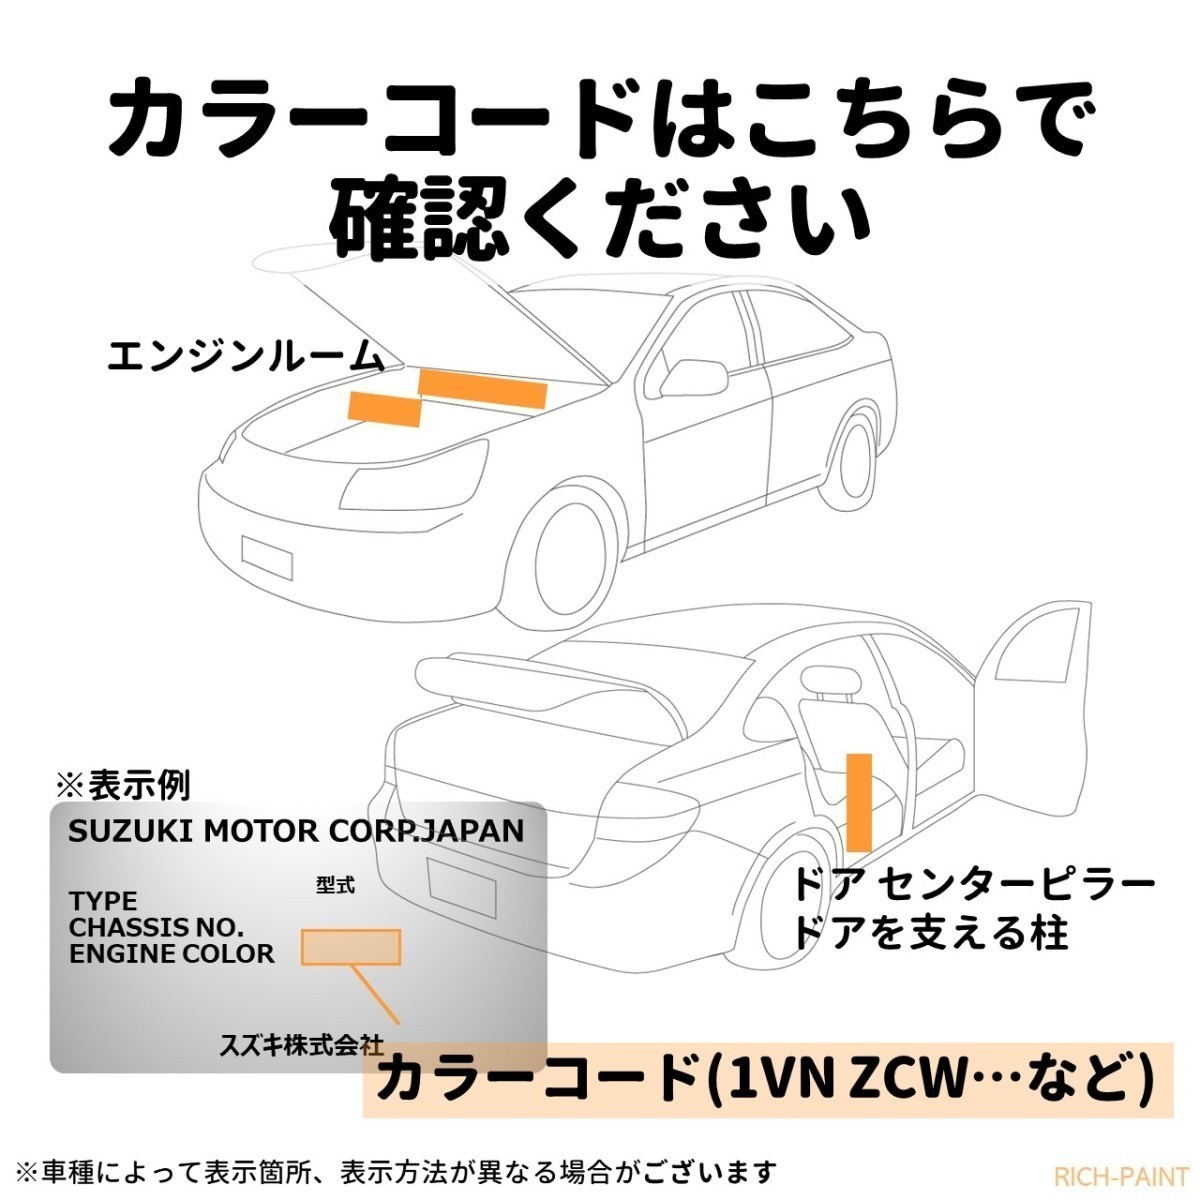 スズキ スーパーブラックパール ZMV 車 塗料 希釈なし ロックペイント 1液ベース プロタッチ ペンキ キズ 補修 修理 SUZUKI 100g RICHPAINT_画像4